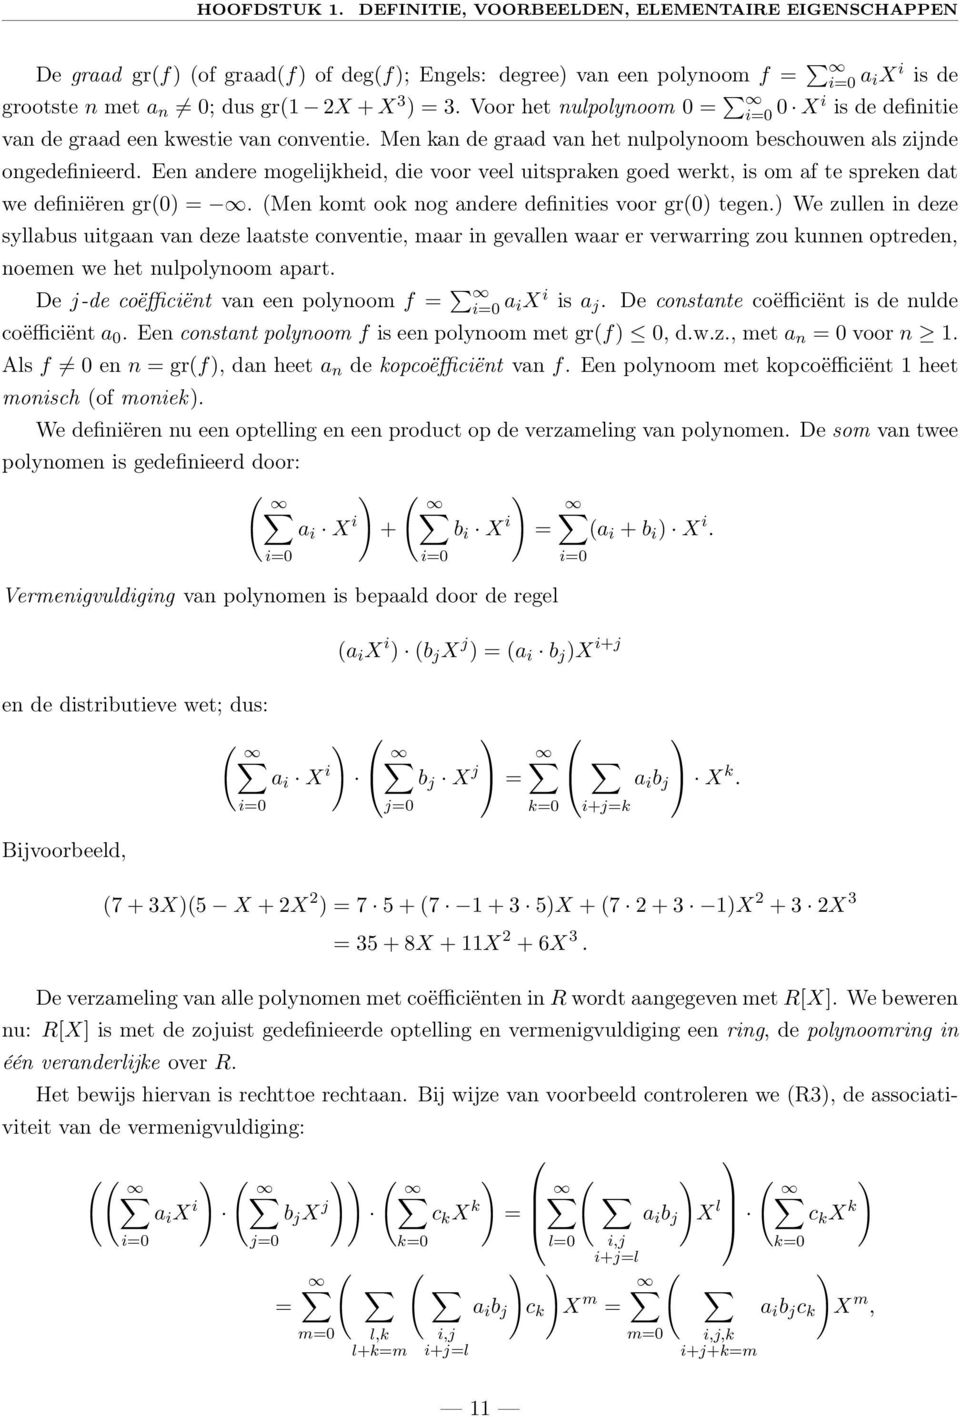 Voor het nulpolynoom 0 = i=0 0 Xi is de definitie van de graad een kwestie van conventie. Men kan de graad van het nulpolynoom beschouwen als zijnde ongedefinieerd.